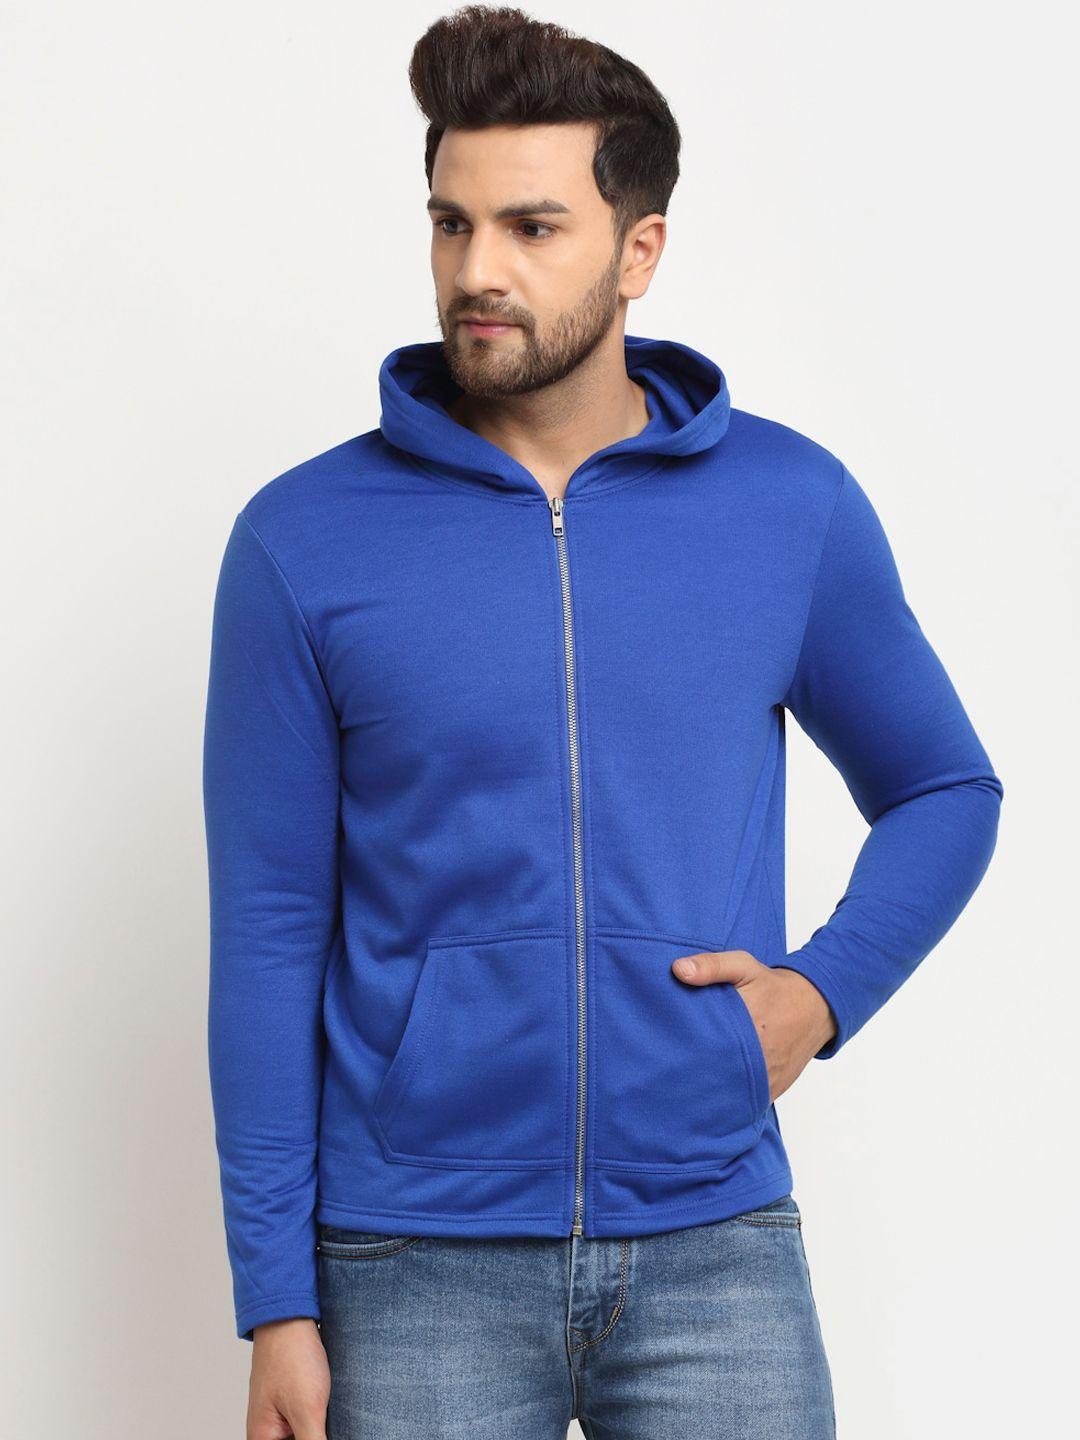 door74 men blue hooded sweatshirt